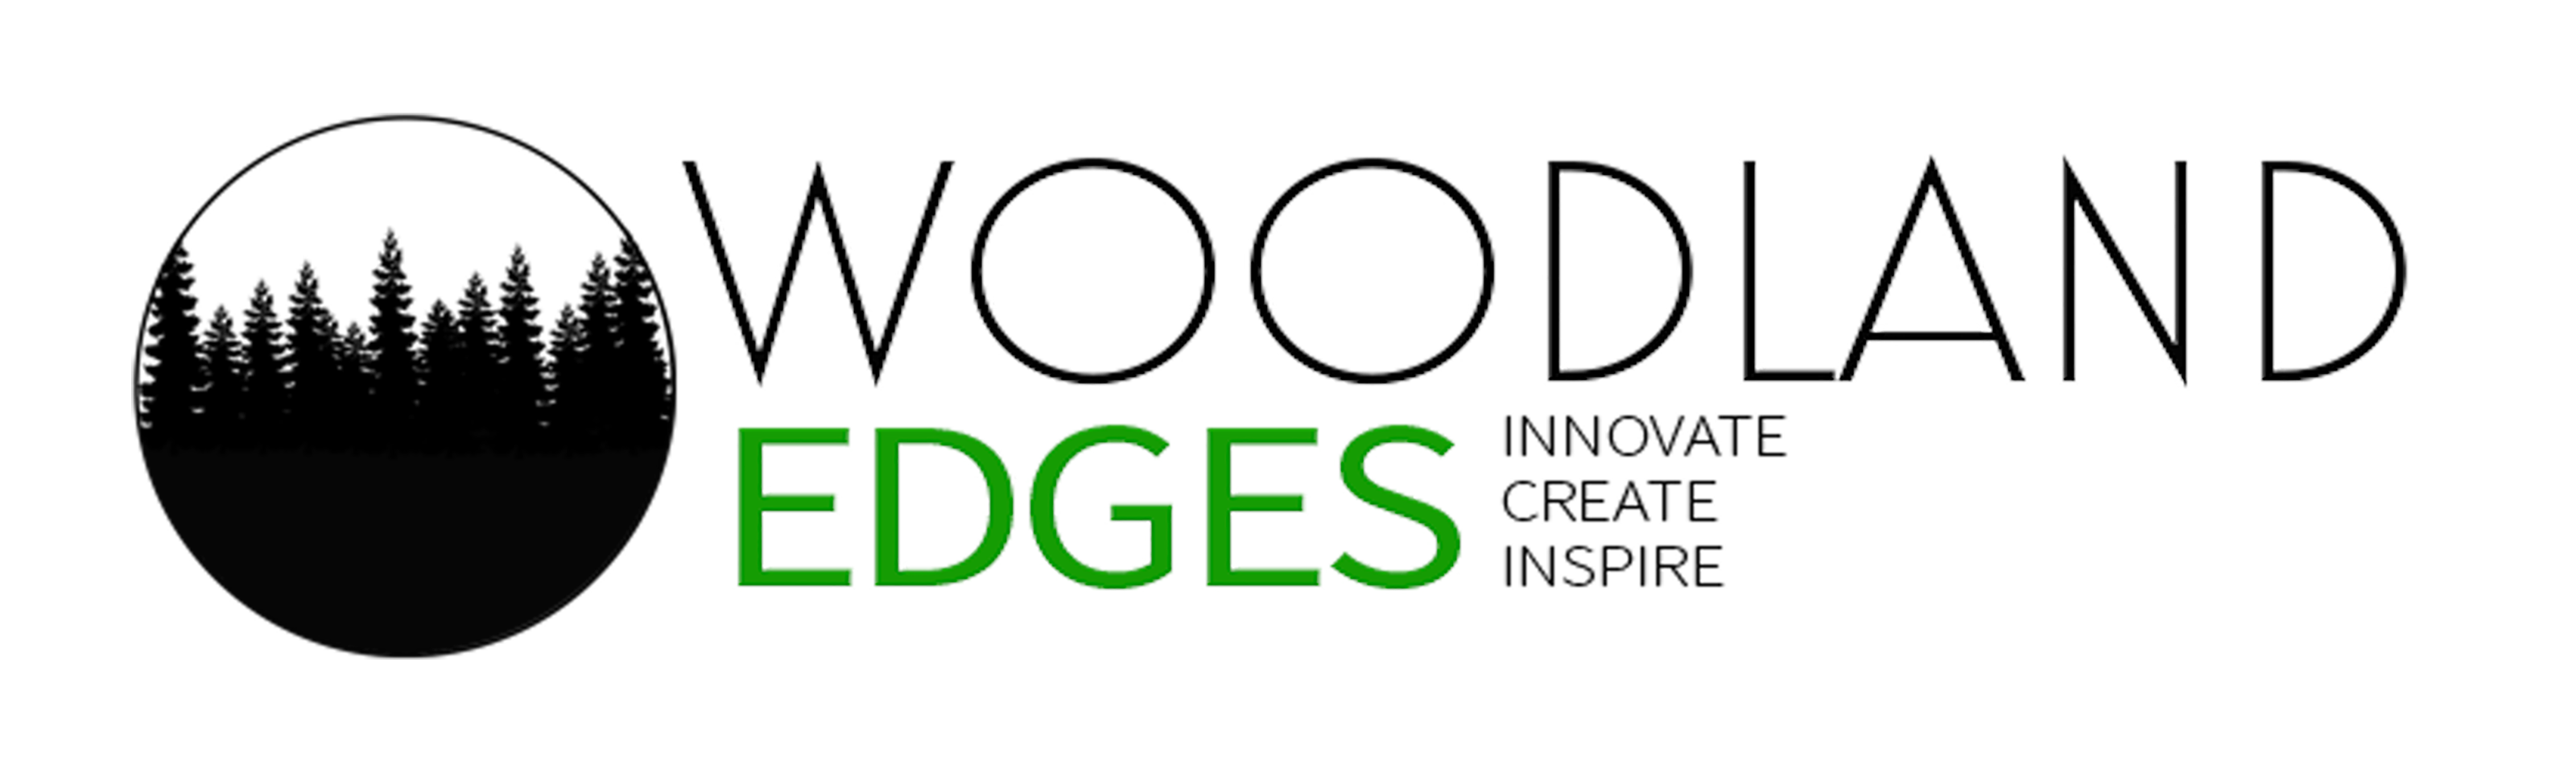 Woodland Edges